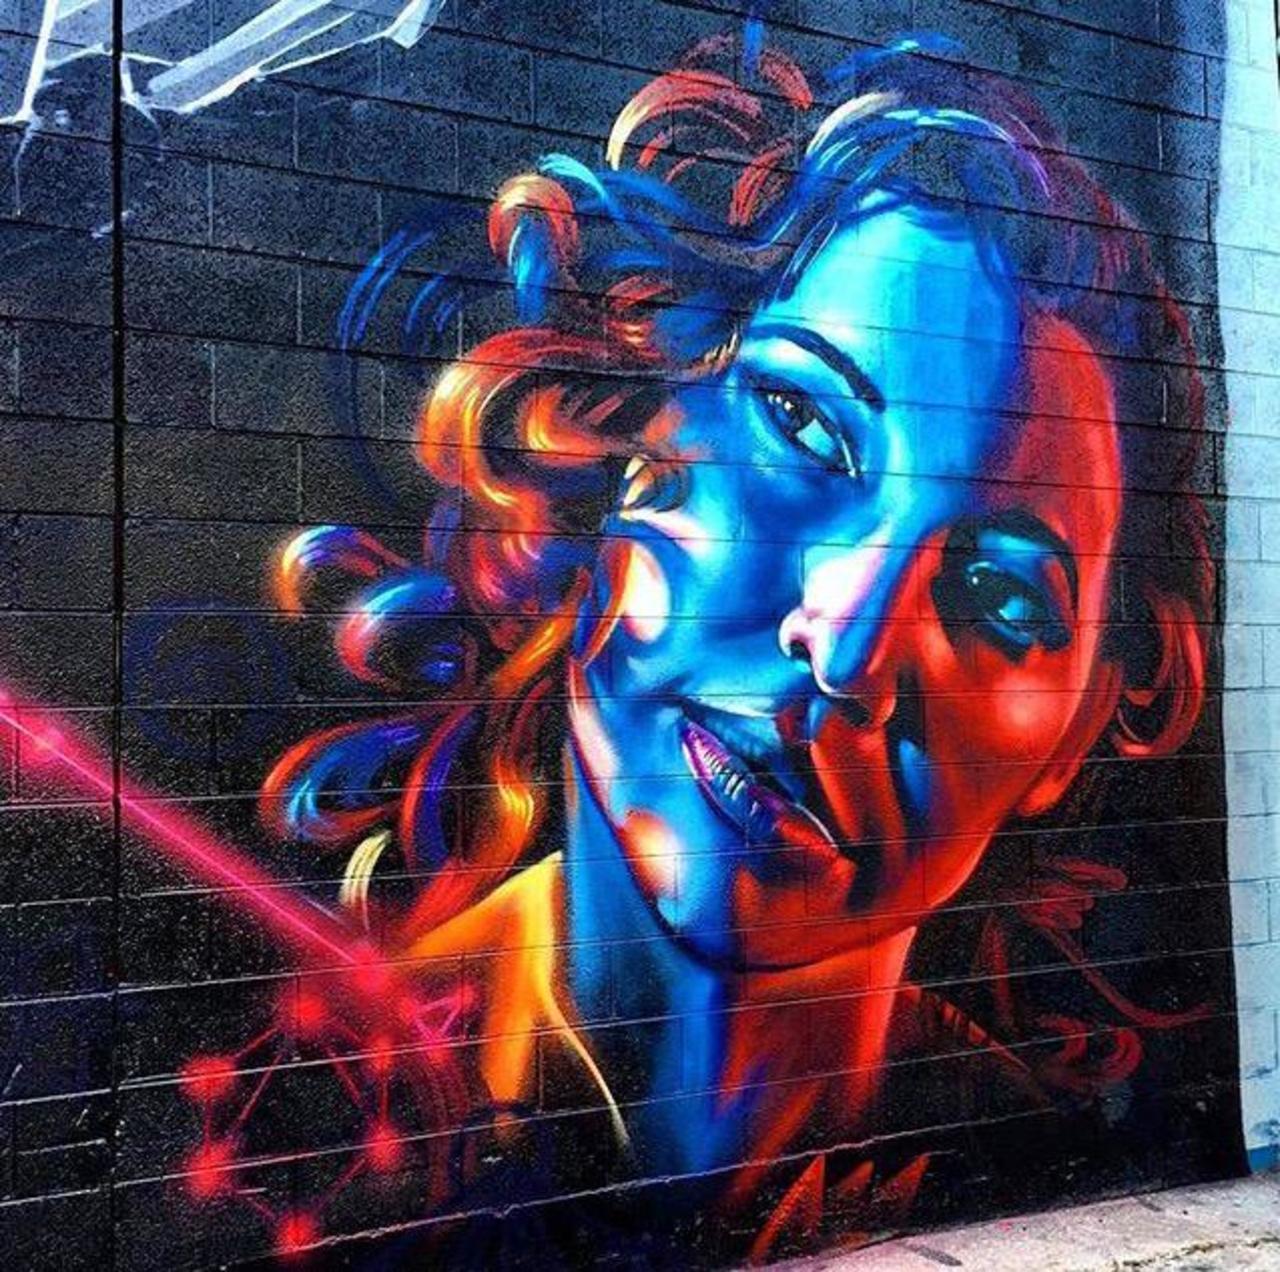 RT GoogleStreetArt: Street Art by dreadicrgod 

#art #graffiti #mural #streetart http://t.co/zKd293KKjr https://goo.gl/7kifqw